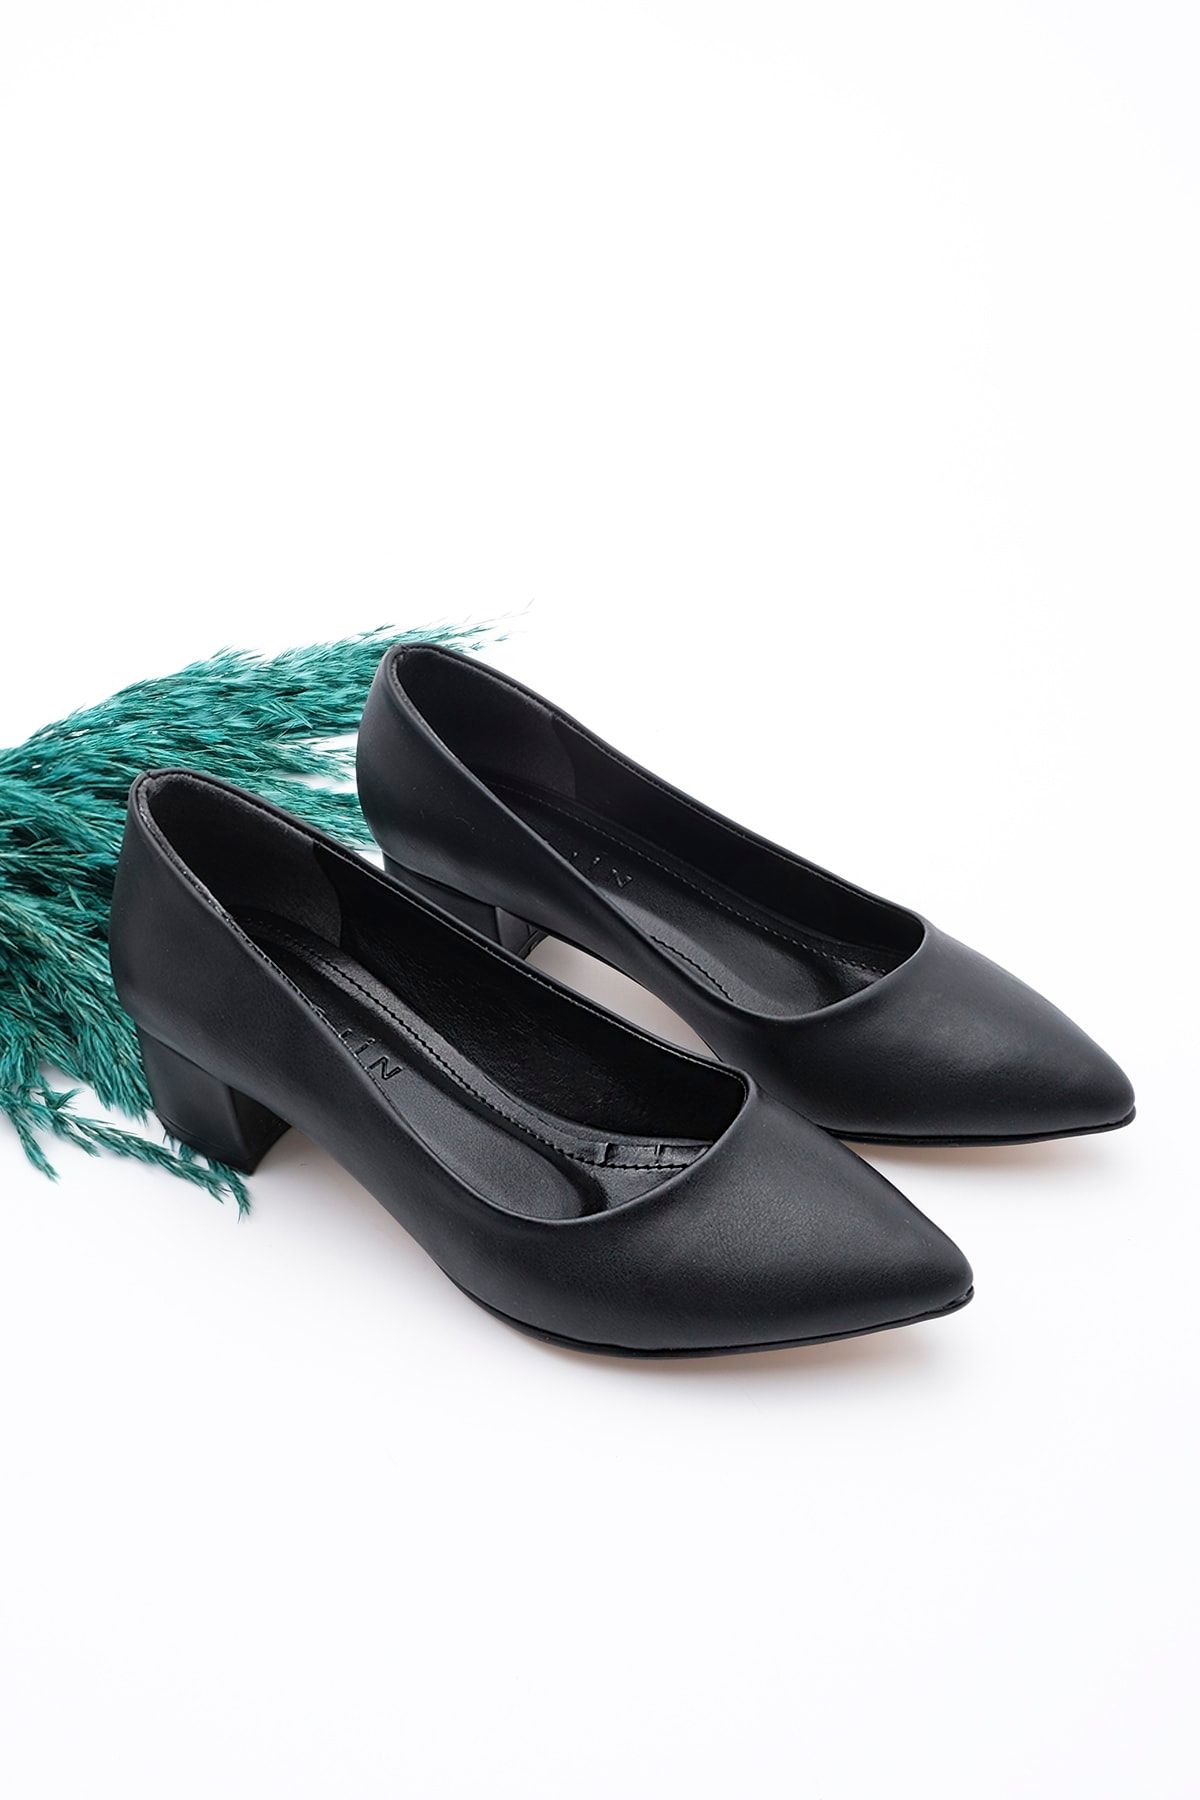 Marjin Kadın Günlük Klasik Topuklu Ayakkabı Sivri Burun Kalın Ökçe Apunte siyah